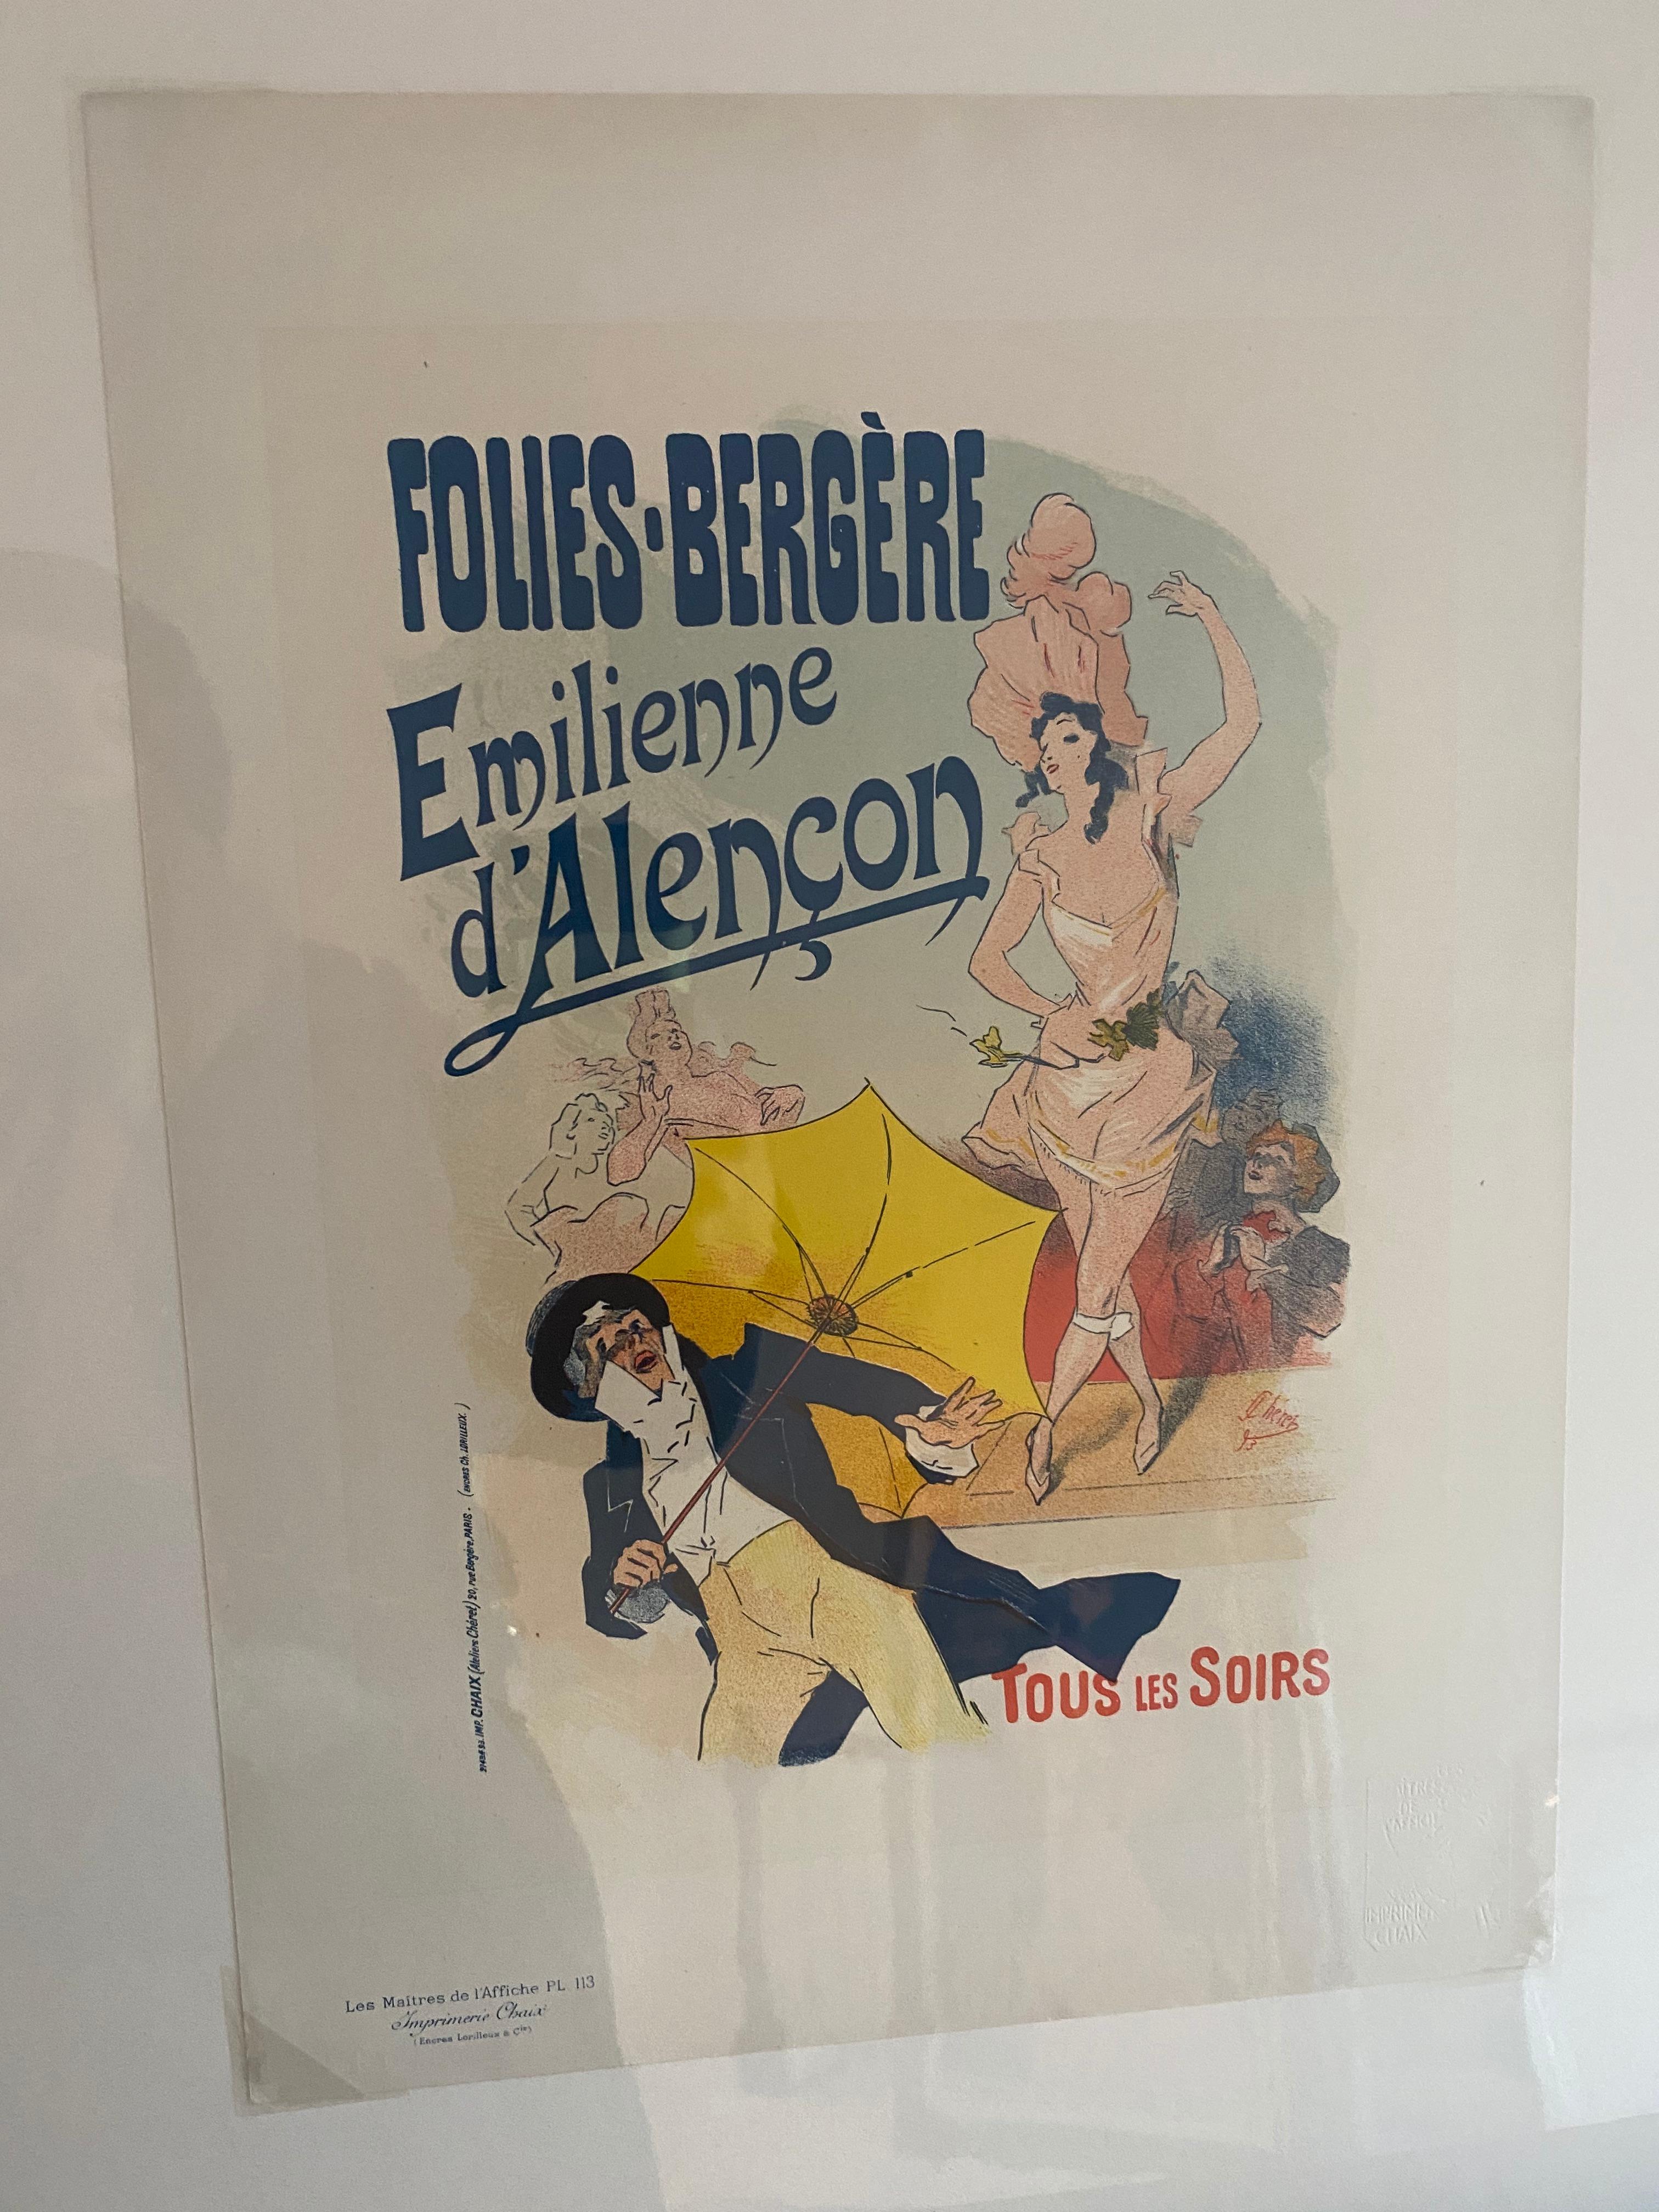 "Emilienne d'Alencon" de Les Maitres de l'Affiche